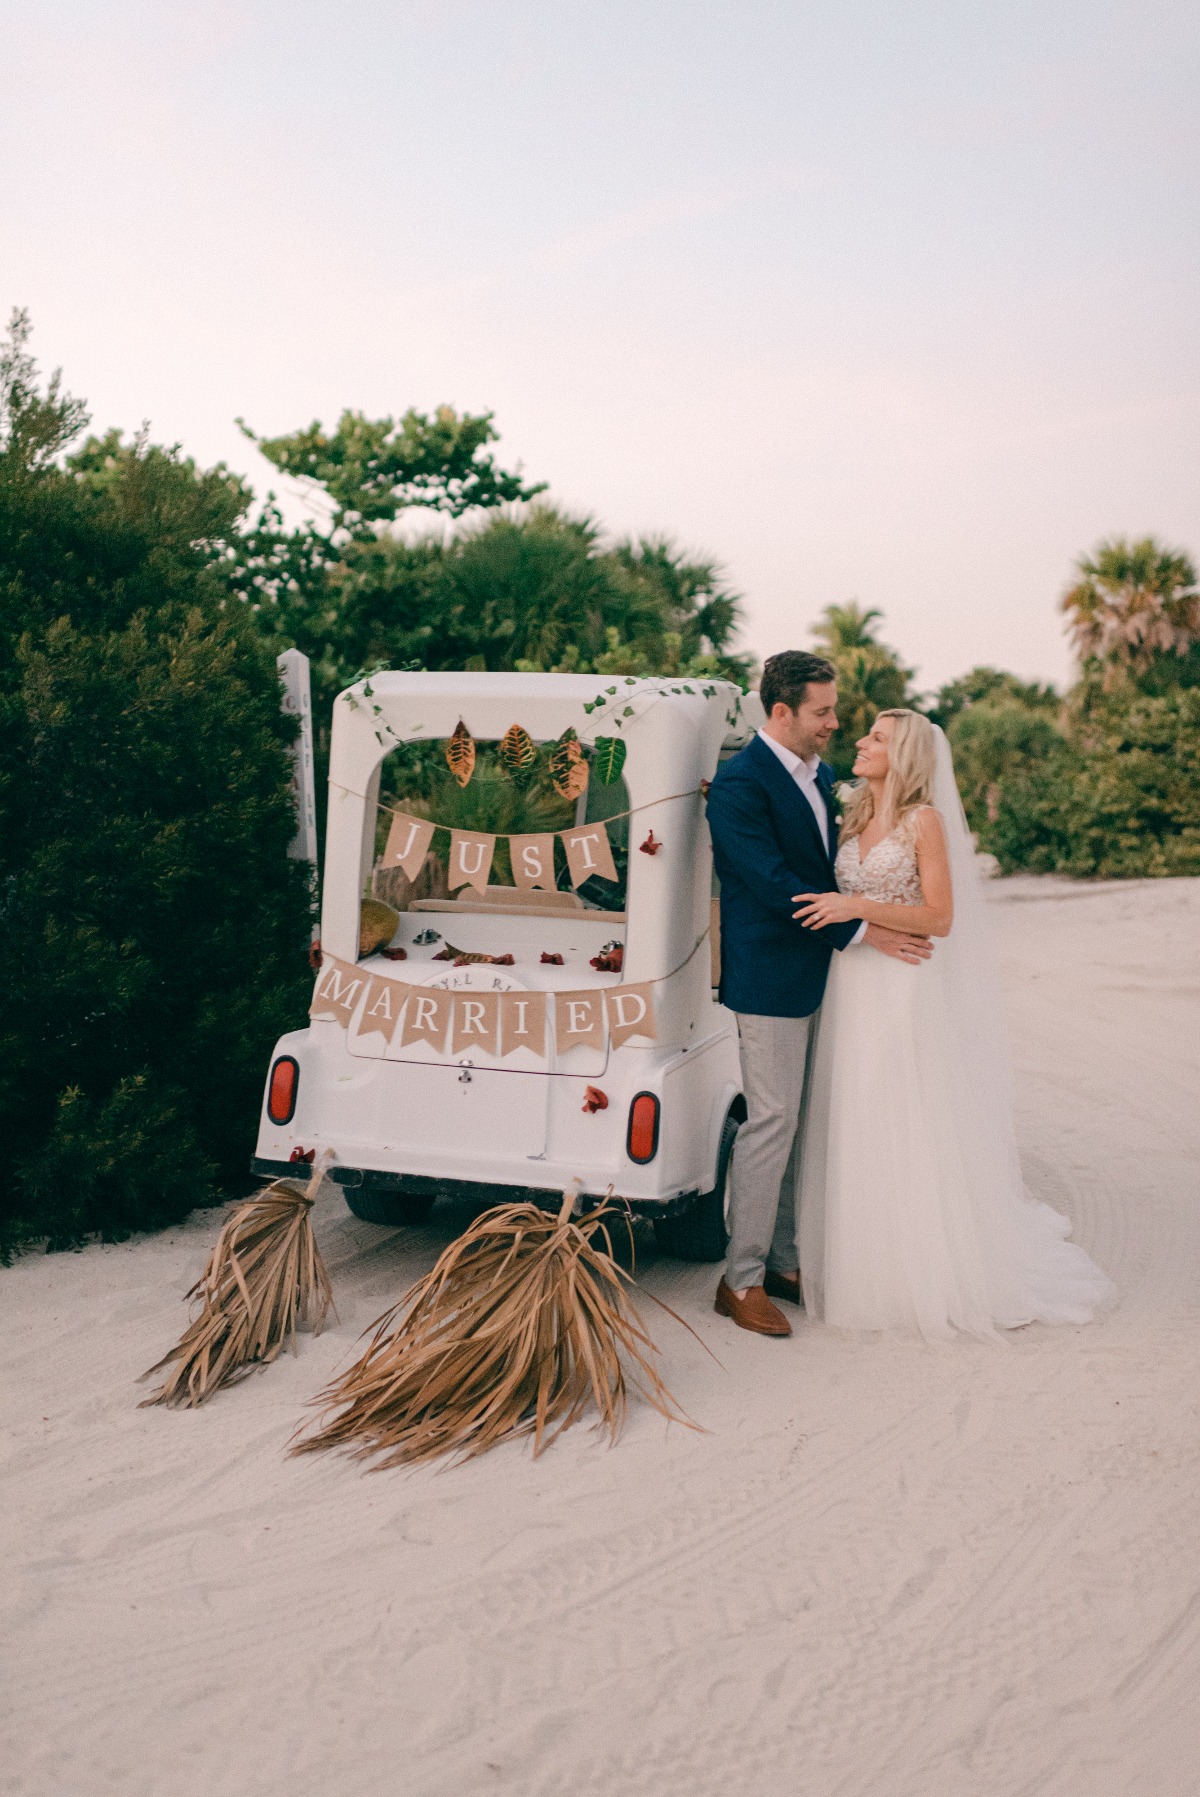 Sunset wedding on North Captiva Island in in Southwest Florida